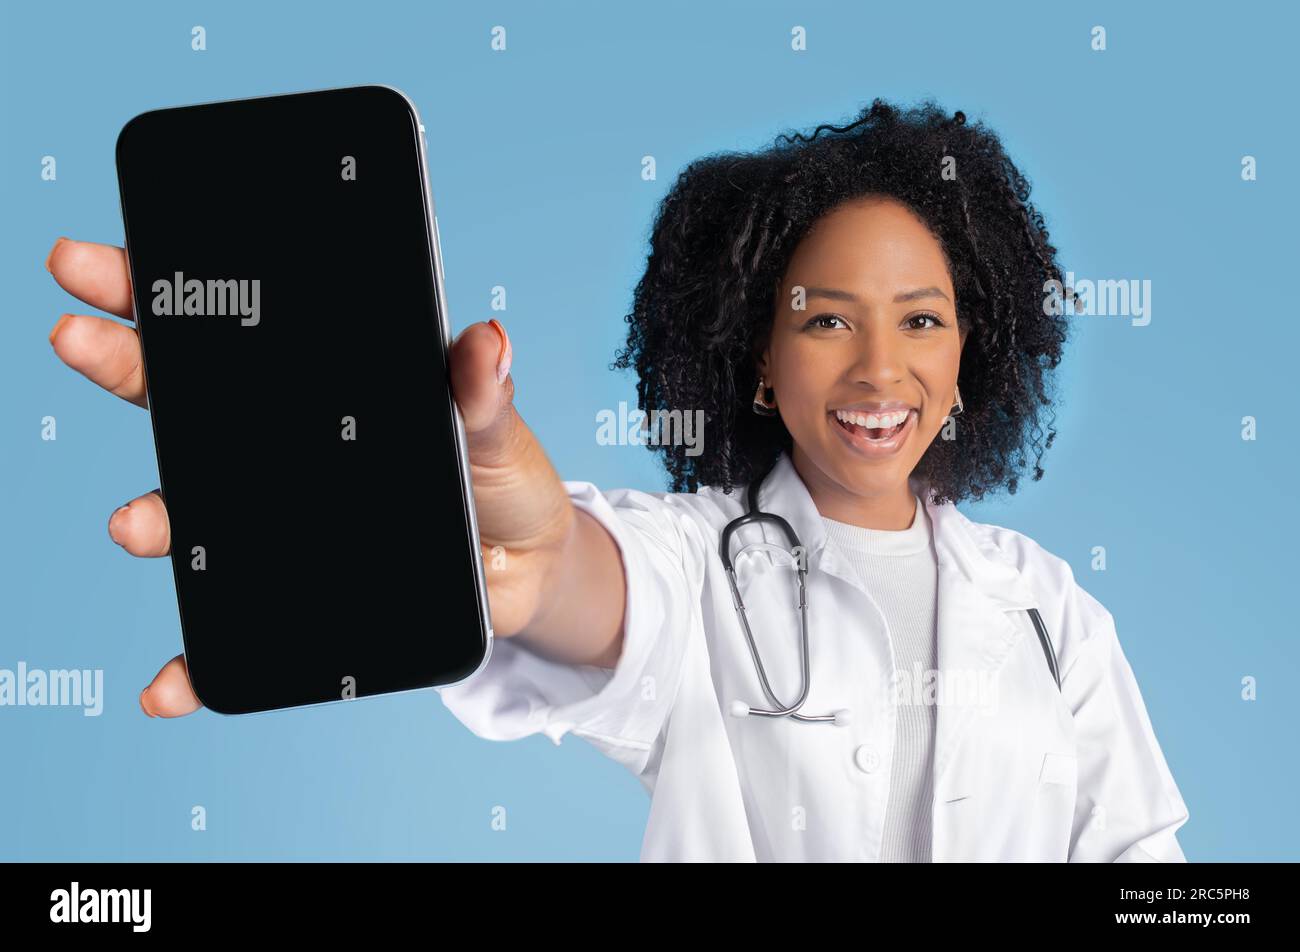 Heureuse jeune femme noire médecin thérapeute en manteau blanc montrer le téléphone avec écran vide Banque D'Images